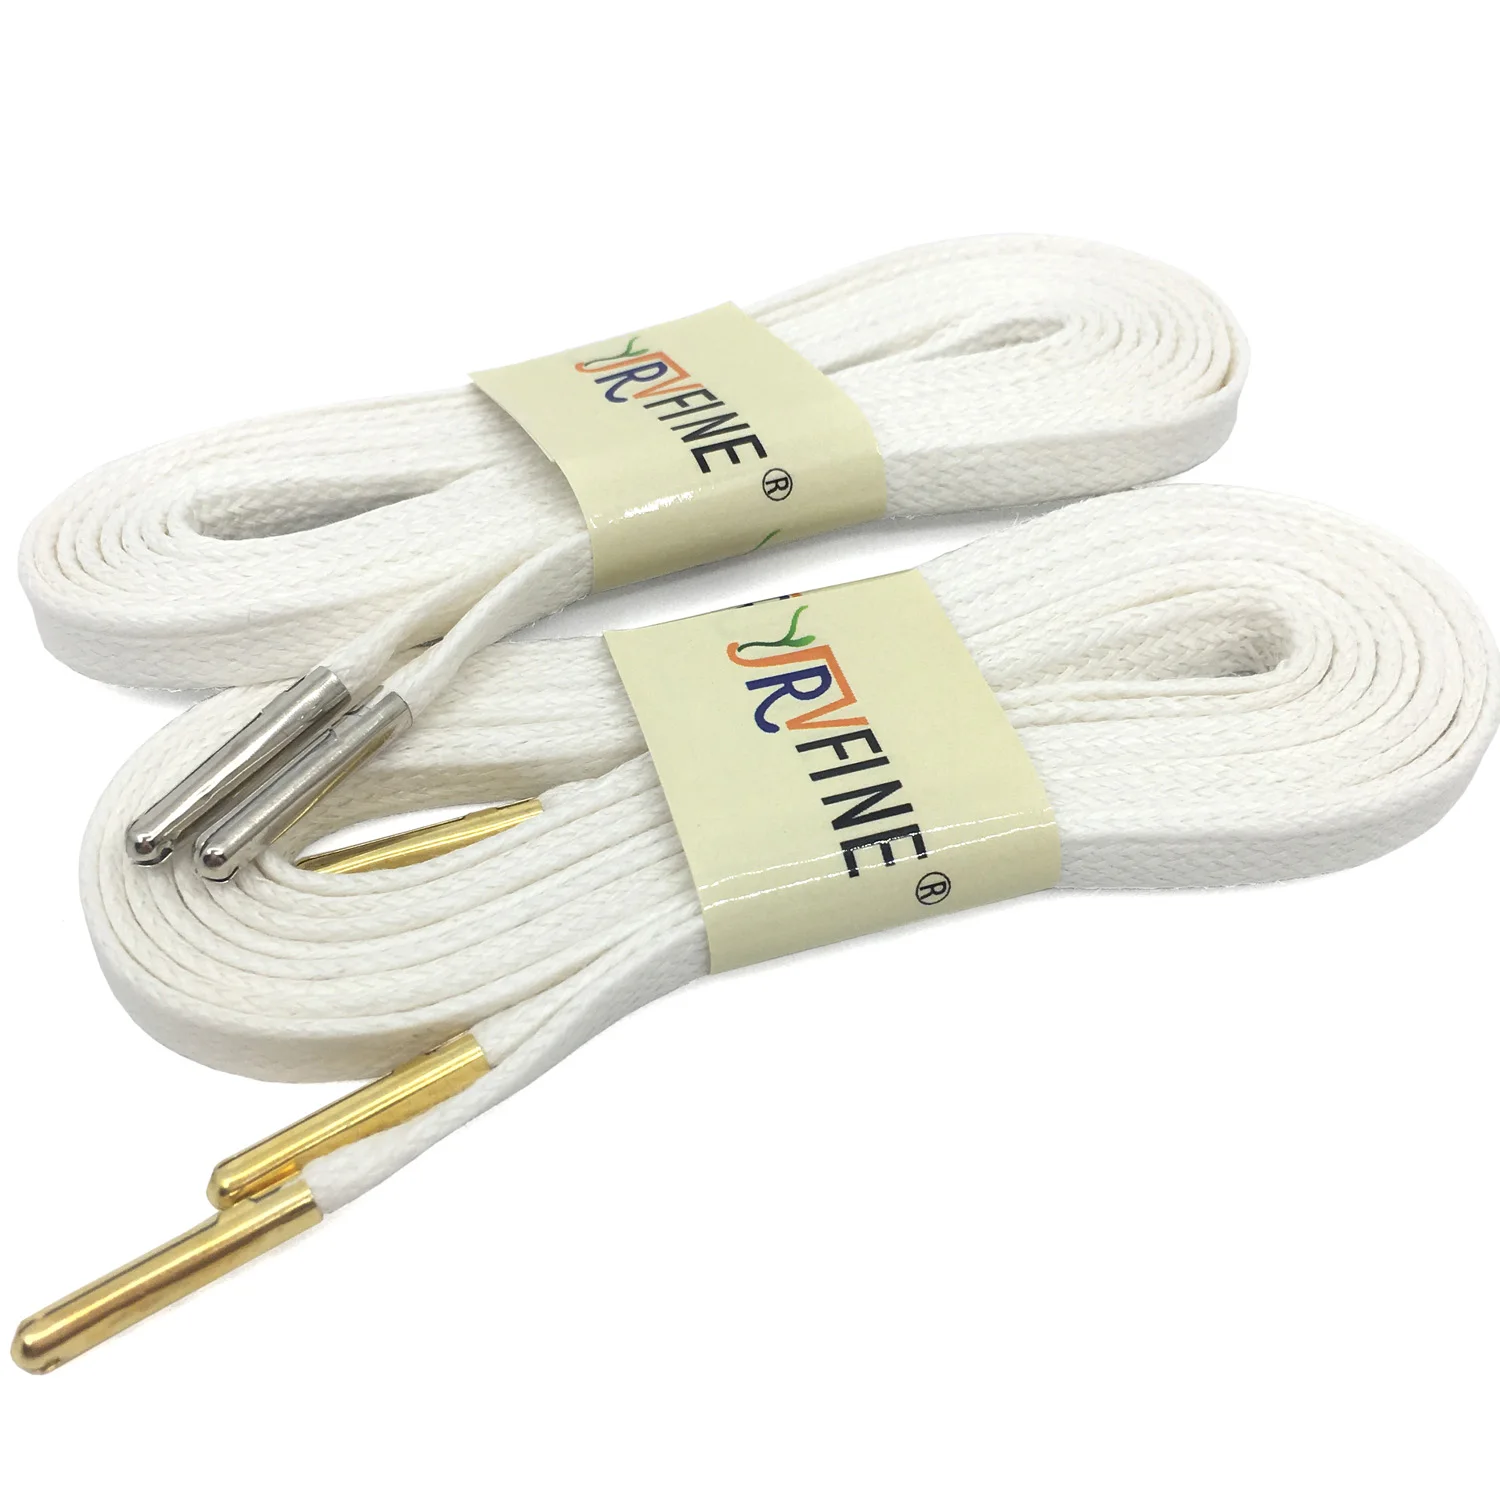 YJRVFINE/2 пары толстых вощеных хлопковых плоских шнурков с золотыми серебряными металлическими наконечниками, высококачественные Вощеные кожаные модельные шнурки - Цвет: 02 White